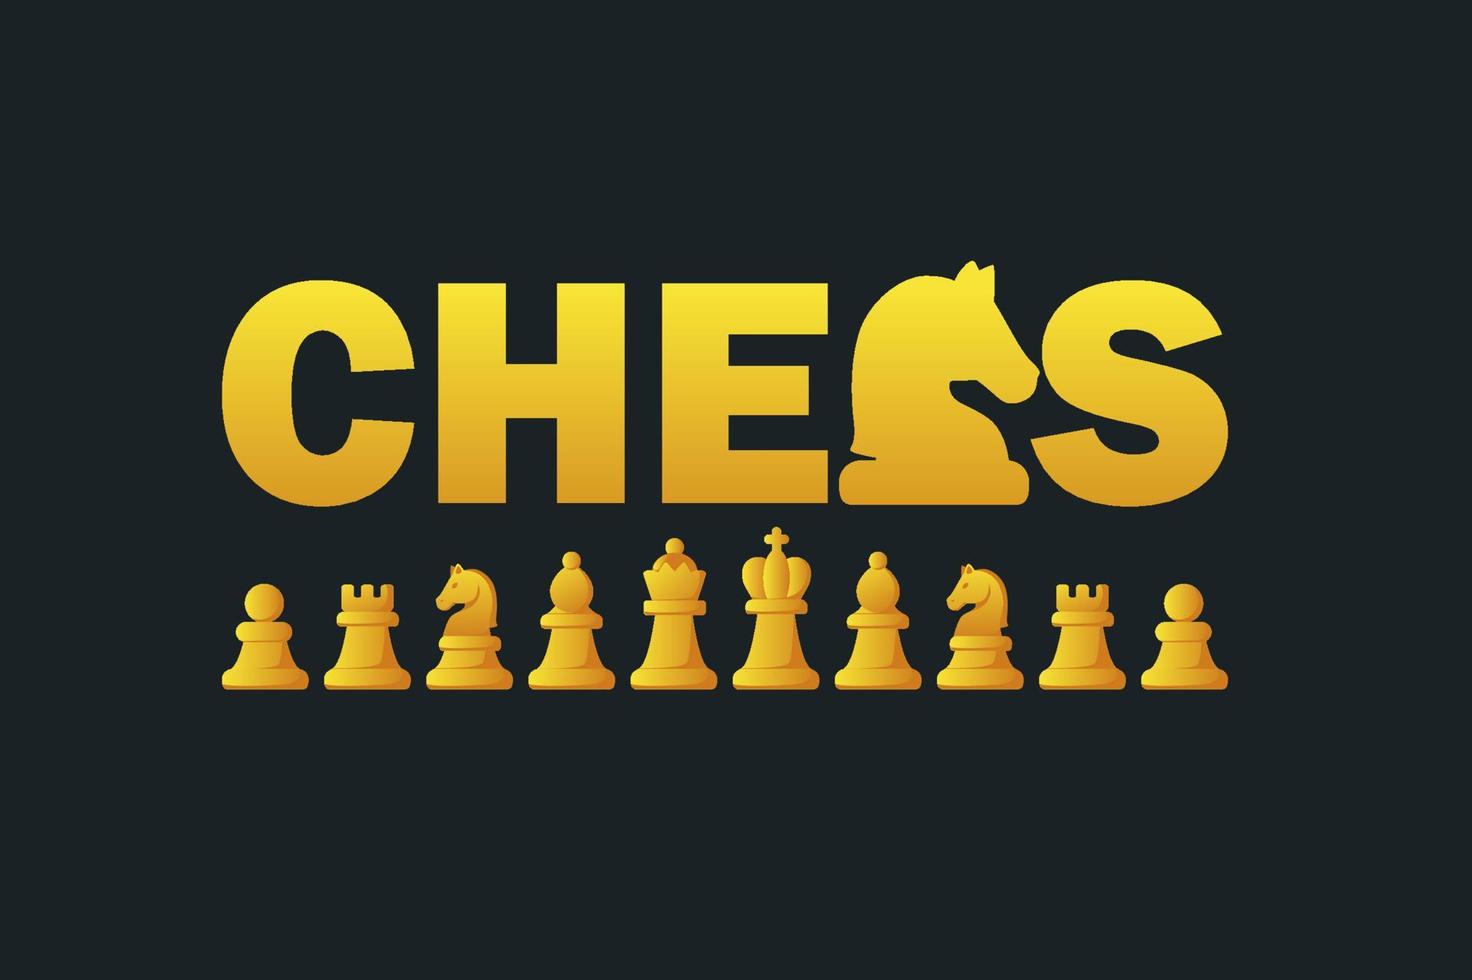 xadrez de logotipo e figuras douradas definidas para jogo de tabuleiro de estratégia de xadrez vetor